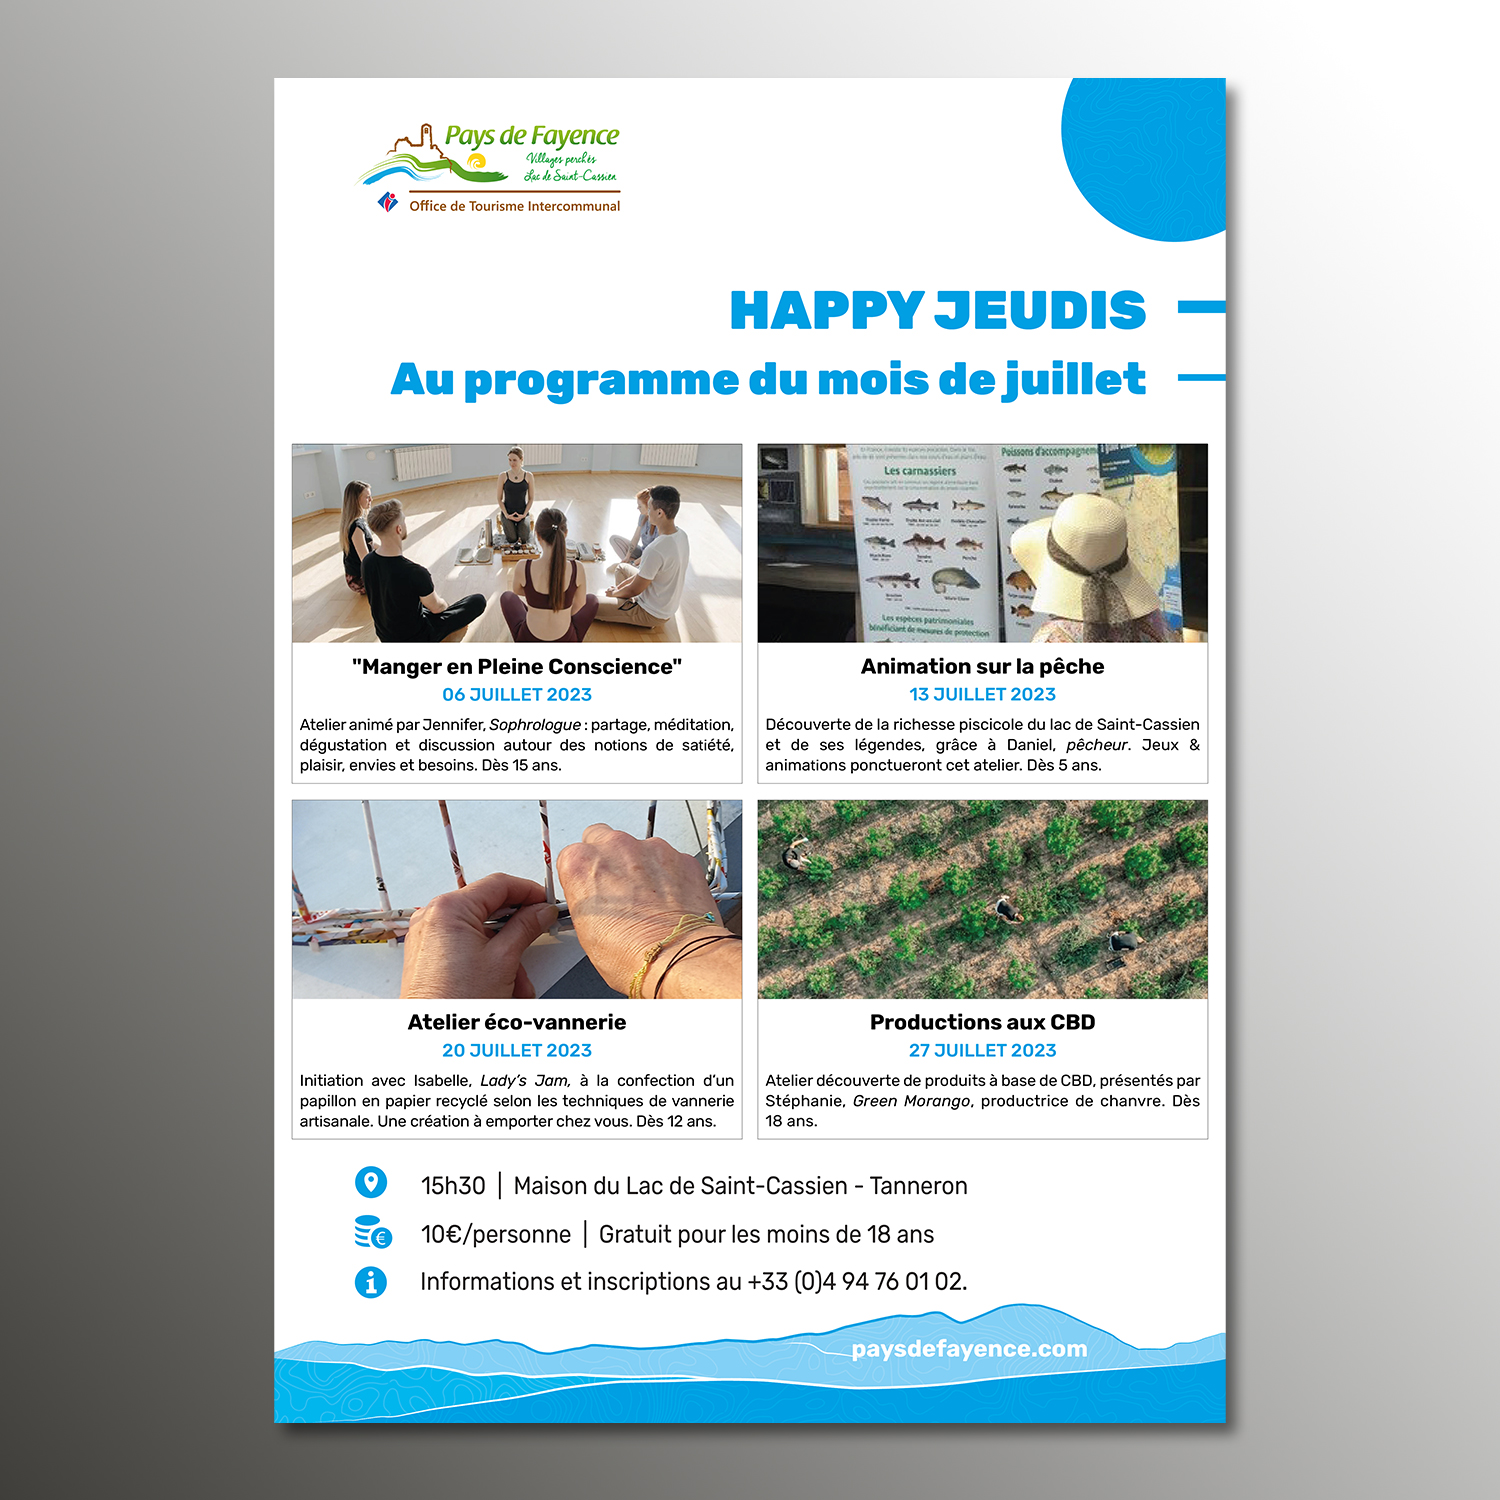 Affiche pour les Happy Jeudis en juillet pour l'Office de Tourisme Intercommunal du Pays de Fayence